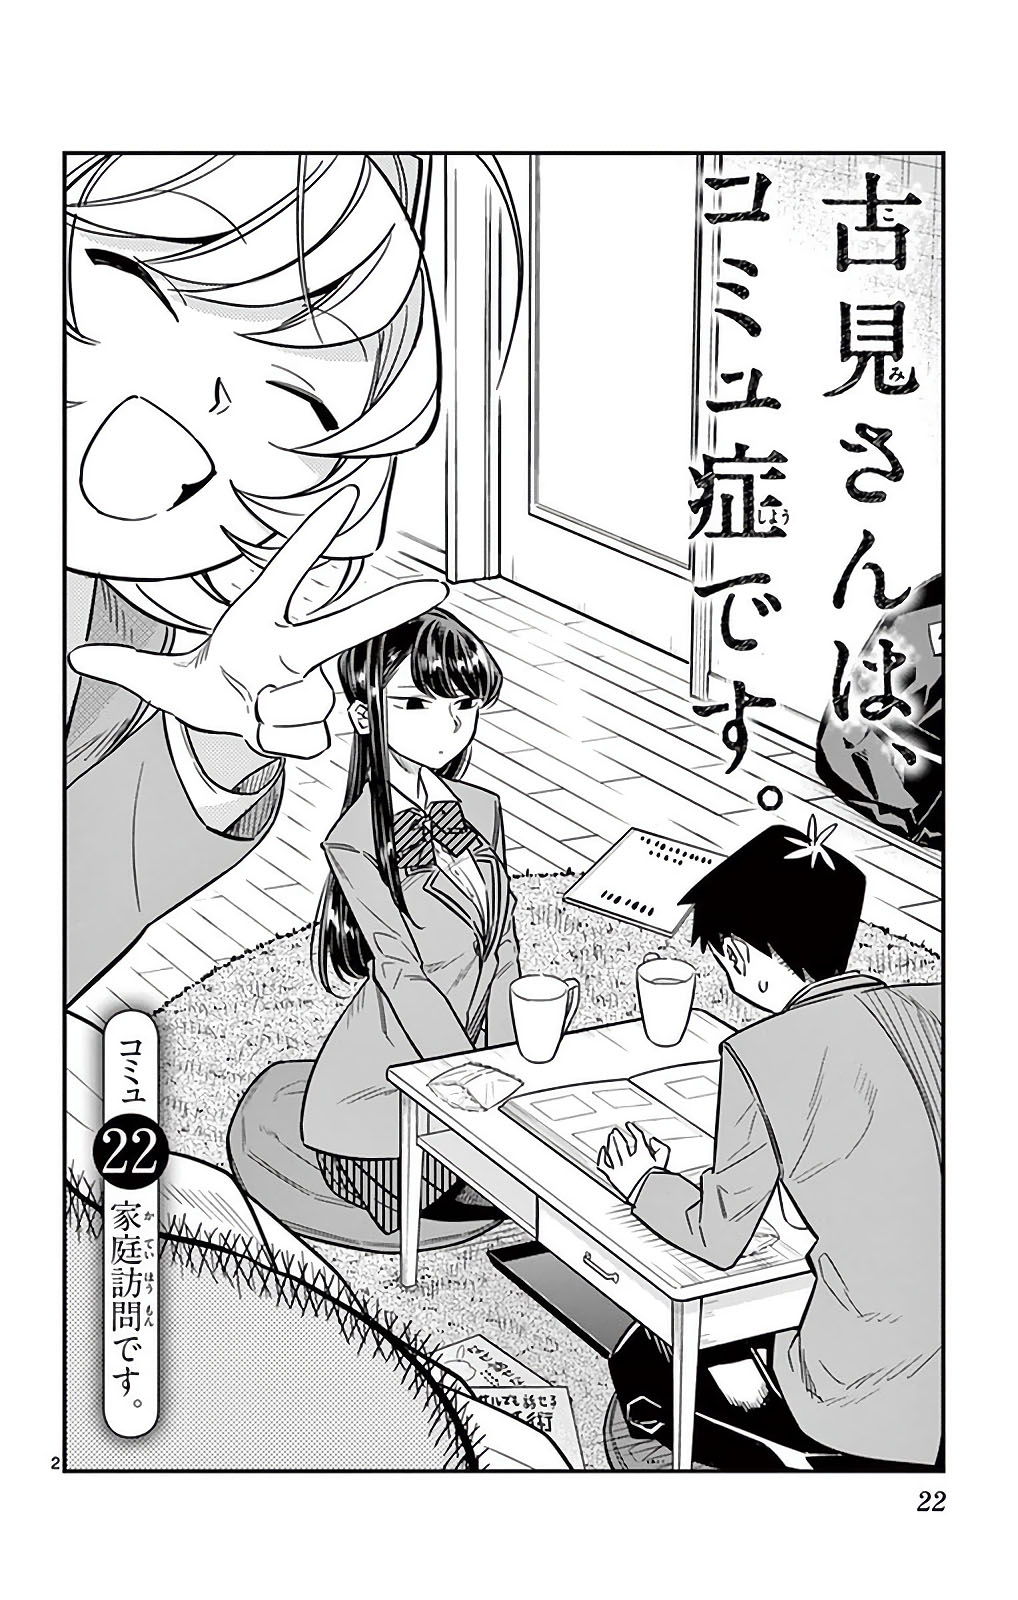 Komi-san wa komisho desu 26 Japanese Comic Manga Tomohito Oda